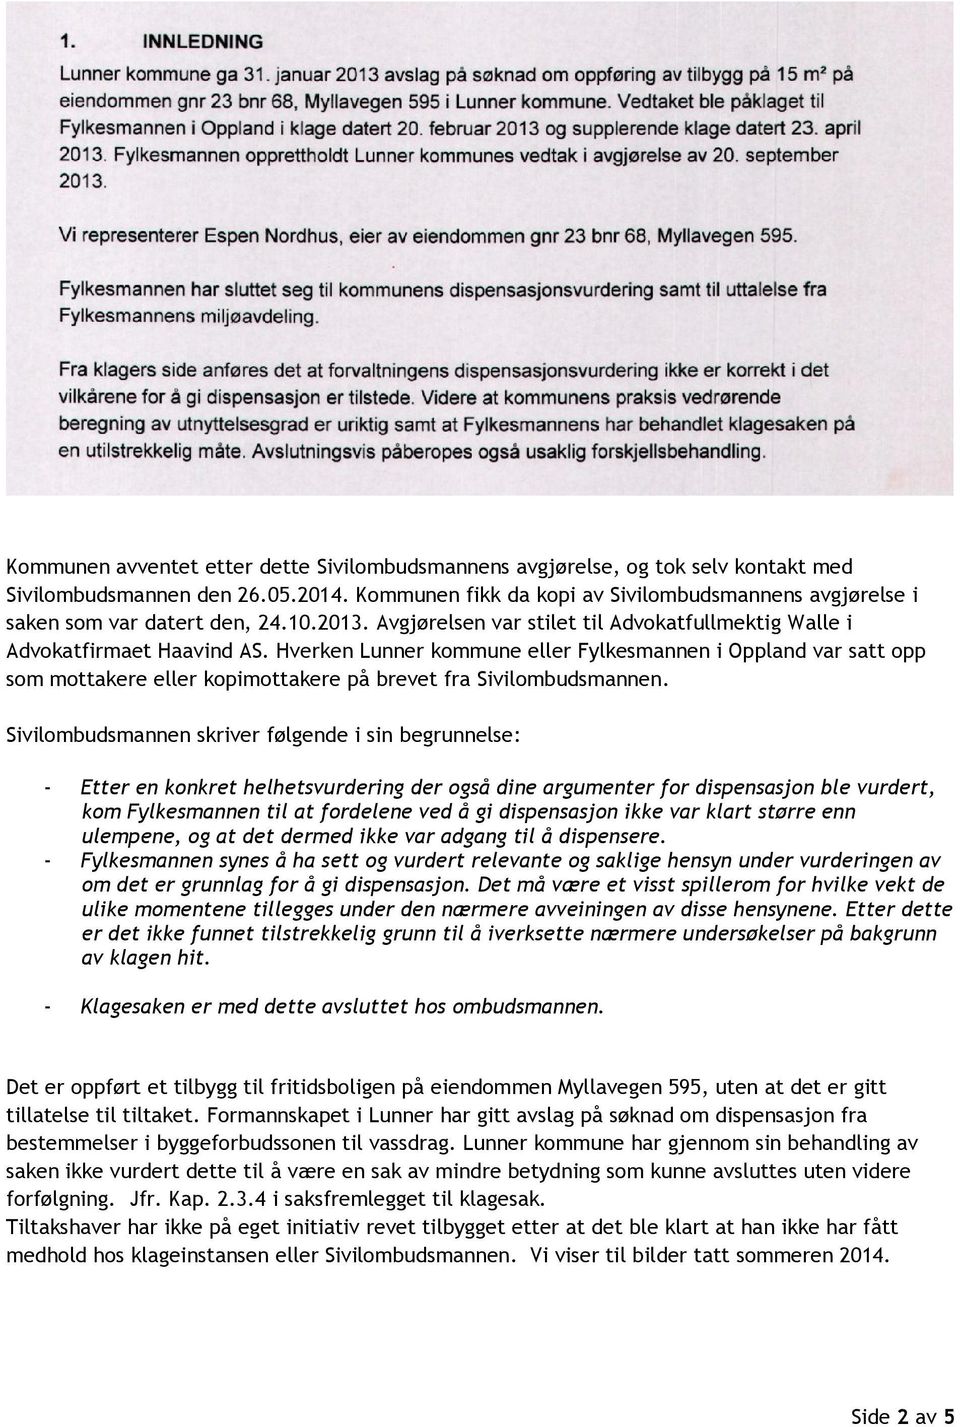 Hverken Lunner kommune eller Fylkesmannen i Oppland var satt opp som mottakere eller kopimottakere på brevet fra Sivilombudsmannen.